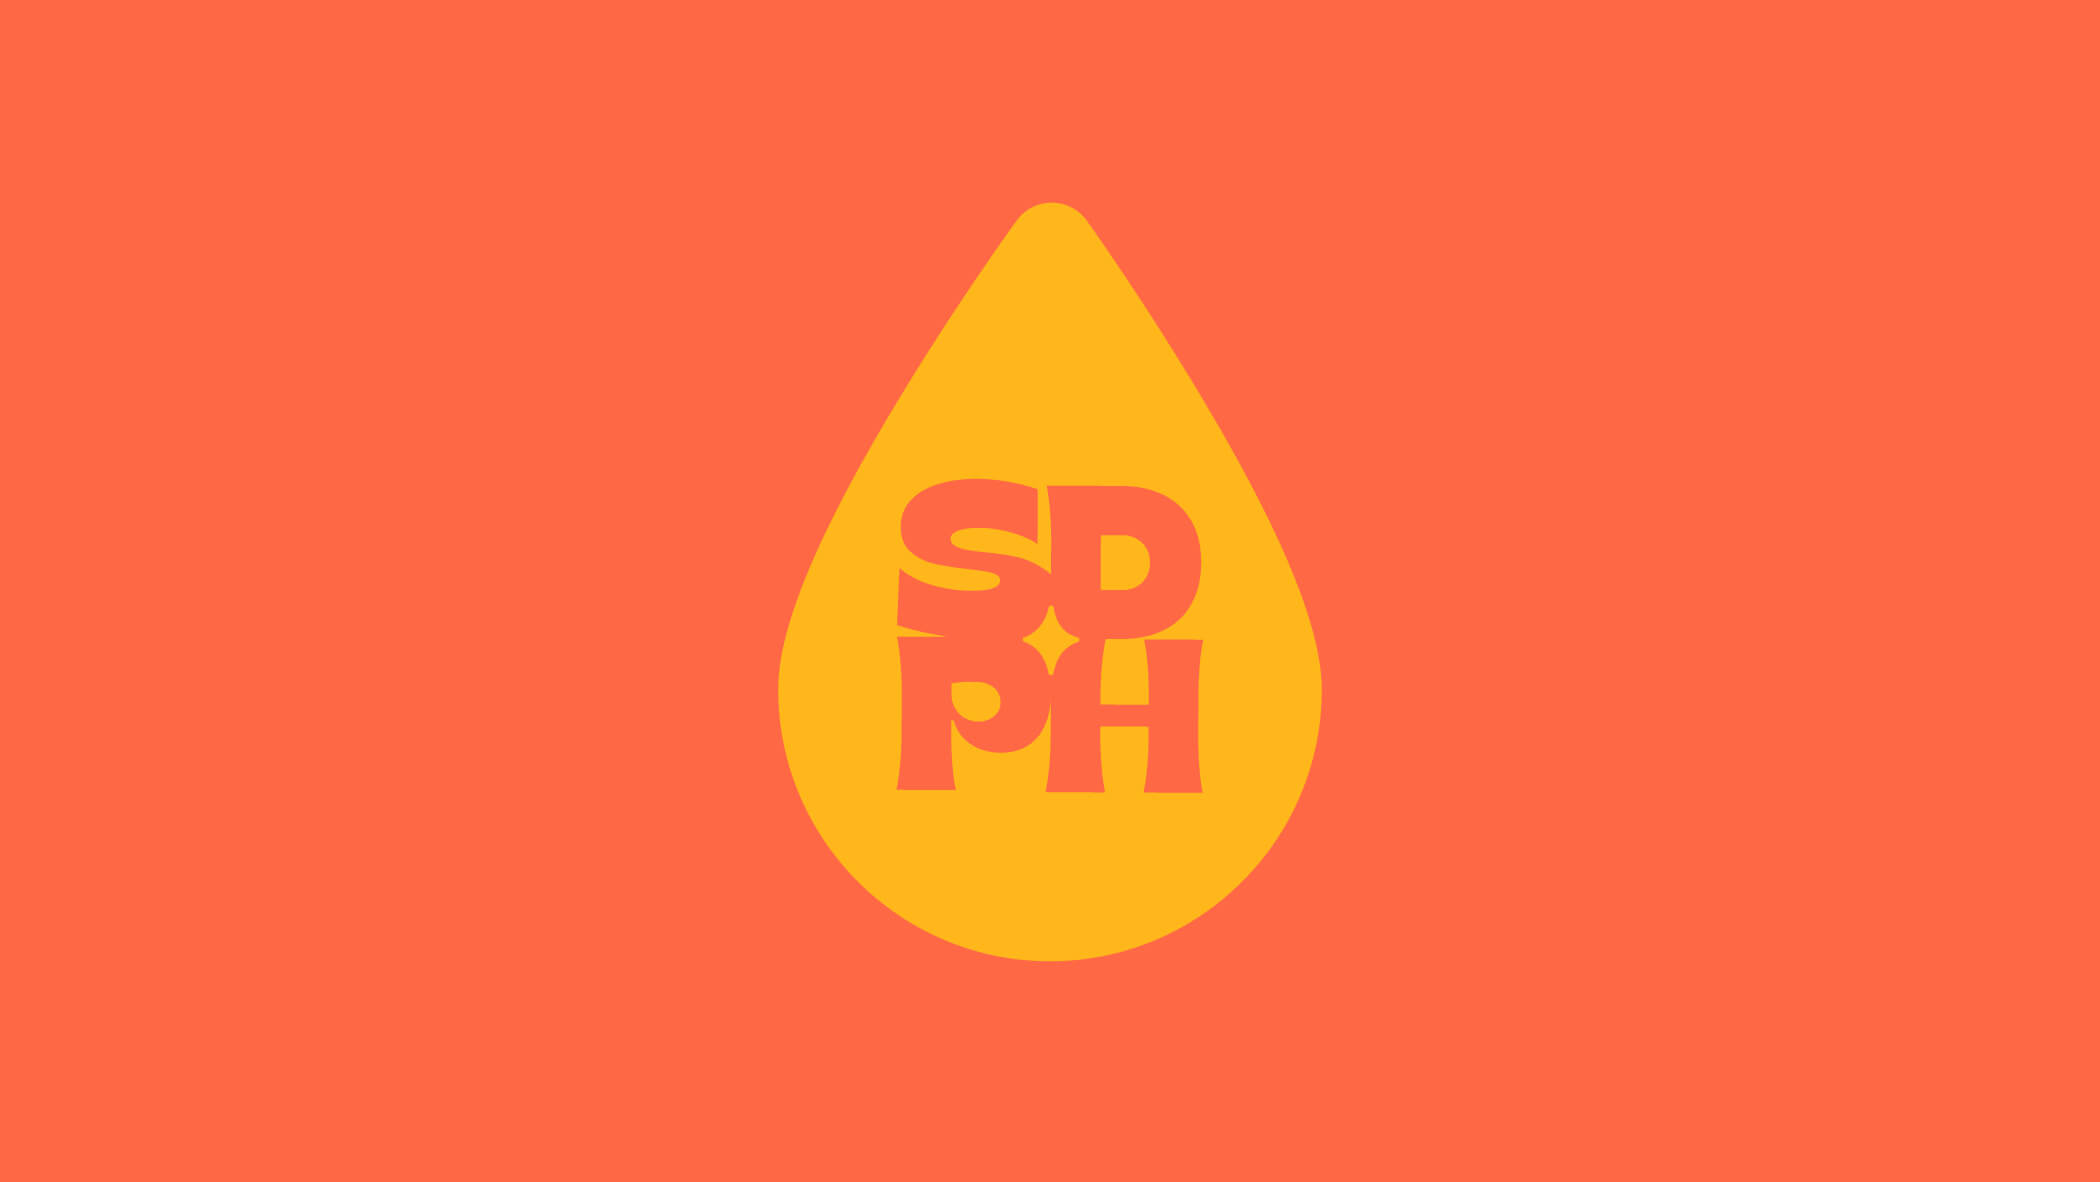 SDPH spirit mark